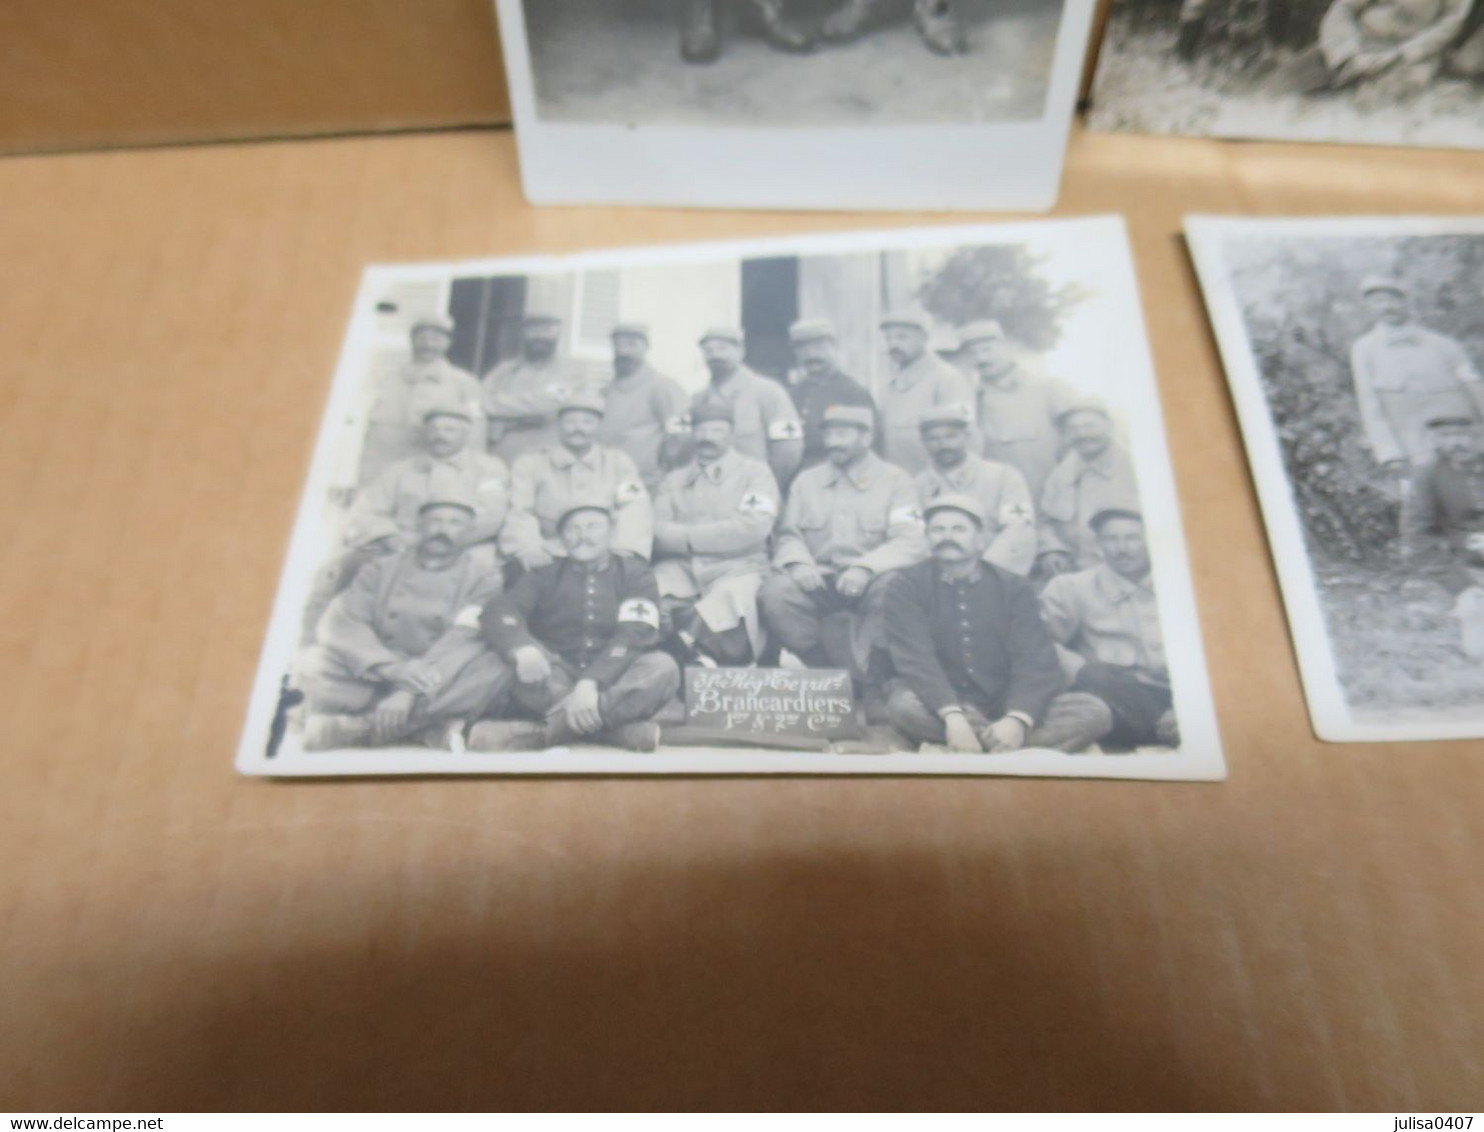 Alençon (61) GUERRE 1914-18  Ensemble De 3 Photos Et Une Carte Photo 31ème Régiment Territorial Croix Rouge - Alencon